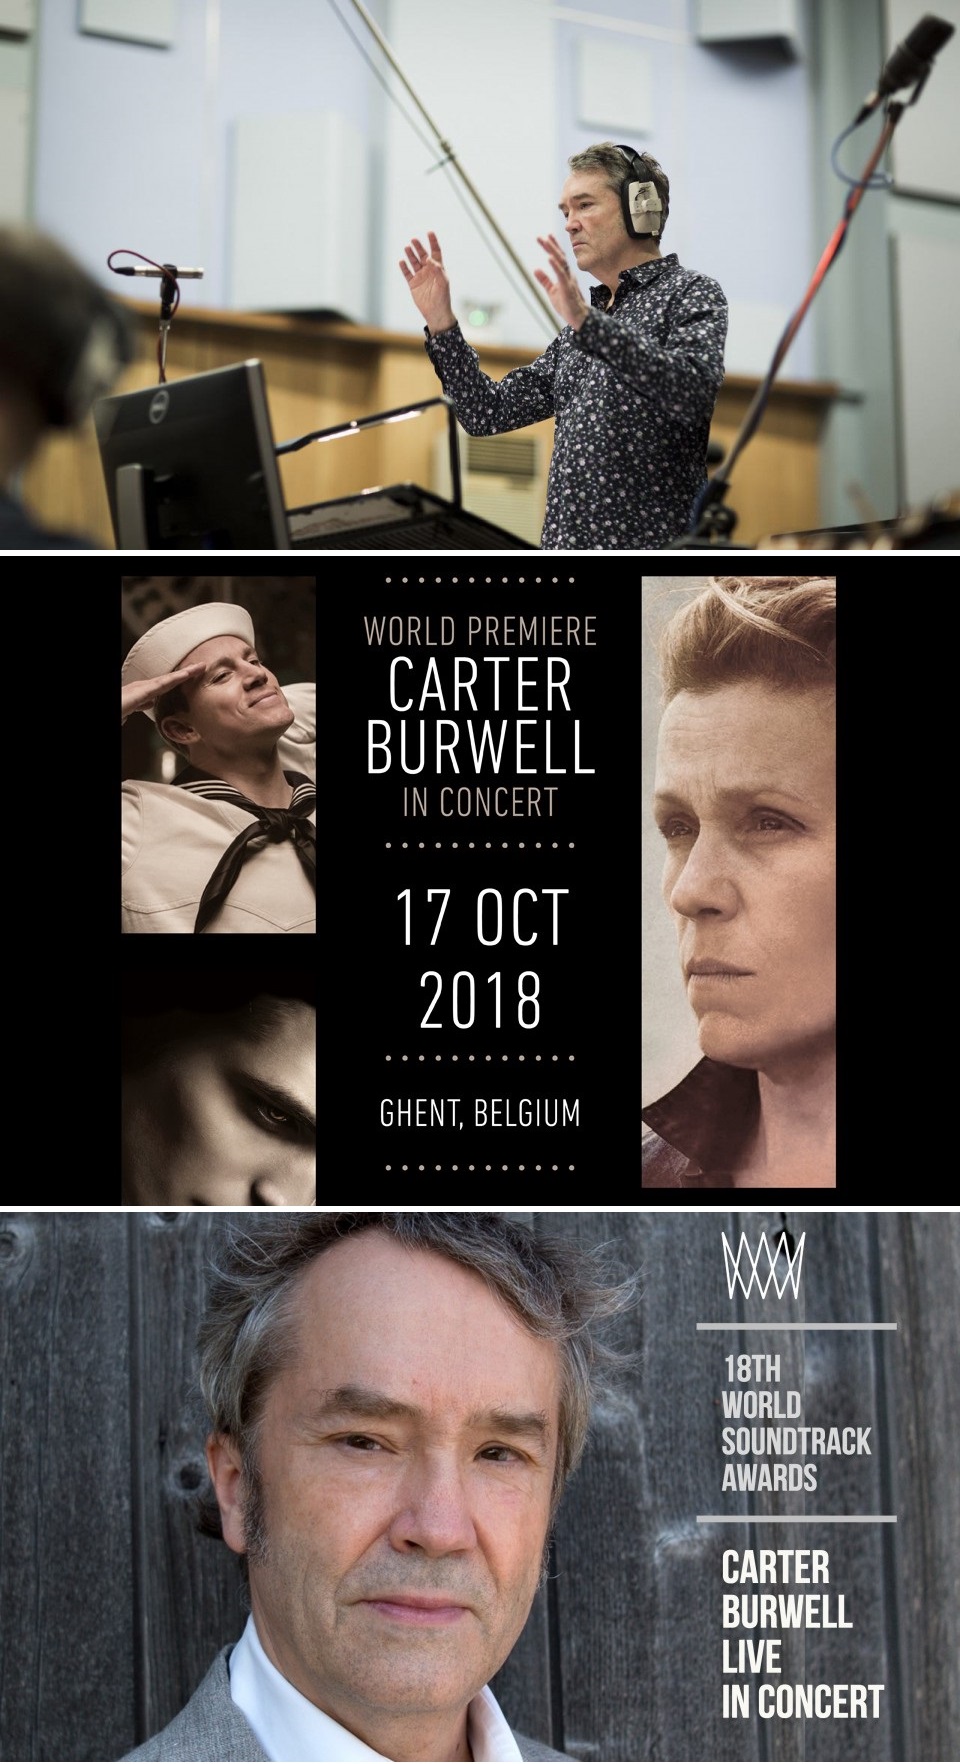 Carter Burwell: Music for Film